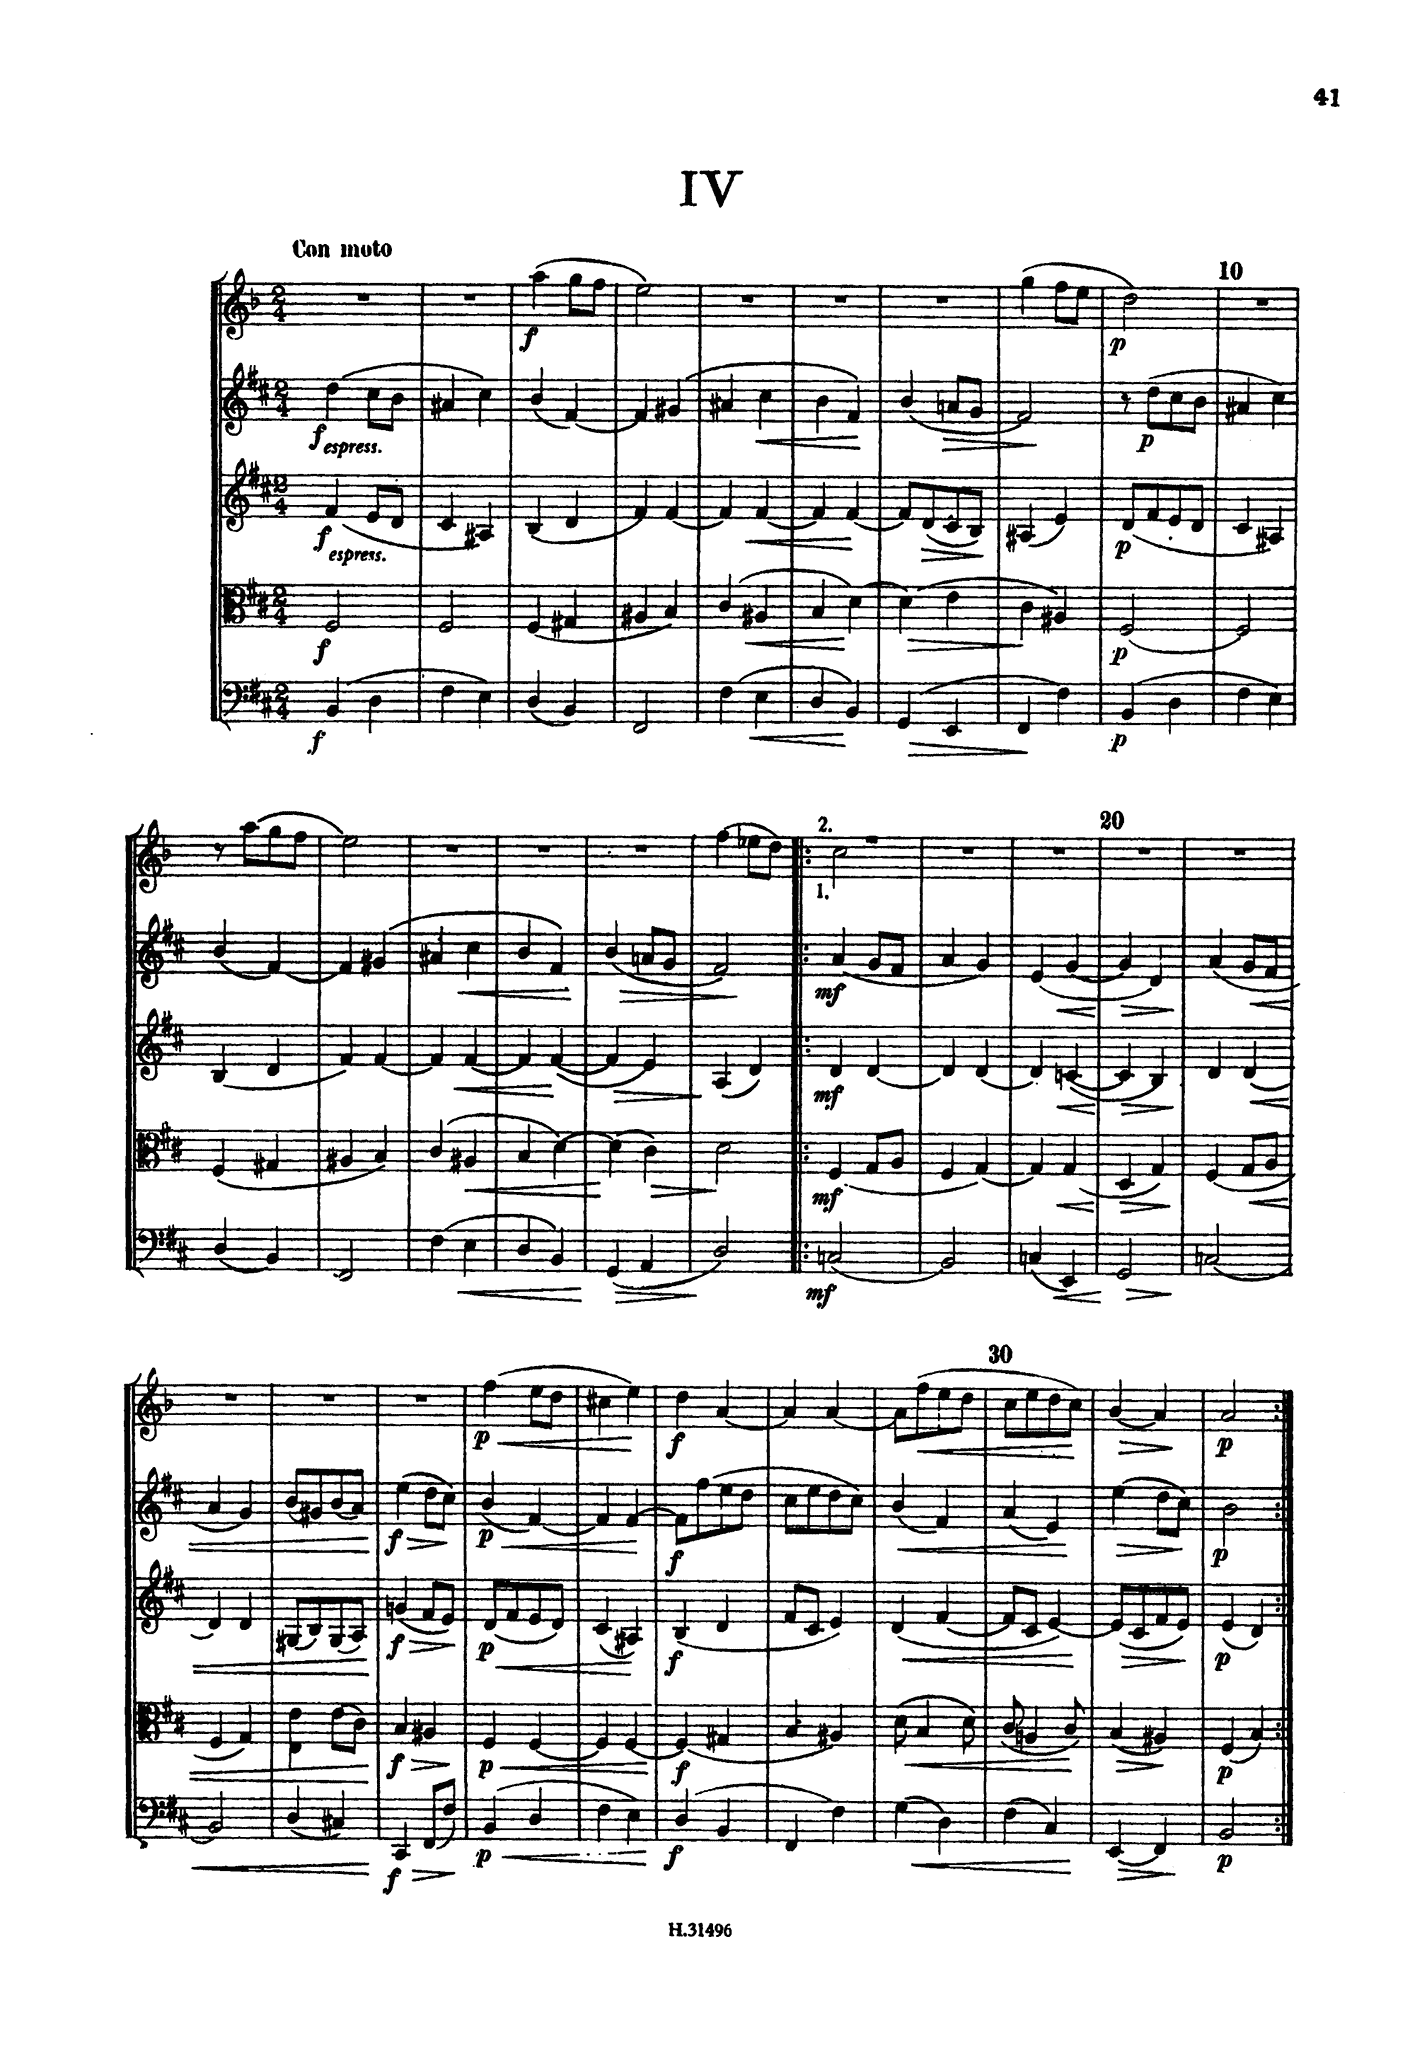 Brahms Clarinet Quintet, Op. 115 pocket score - Movement 4